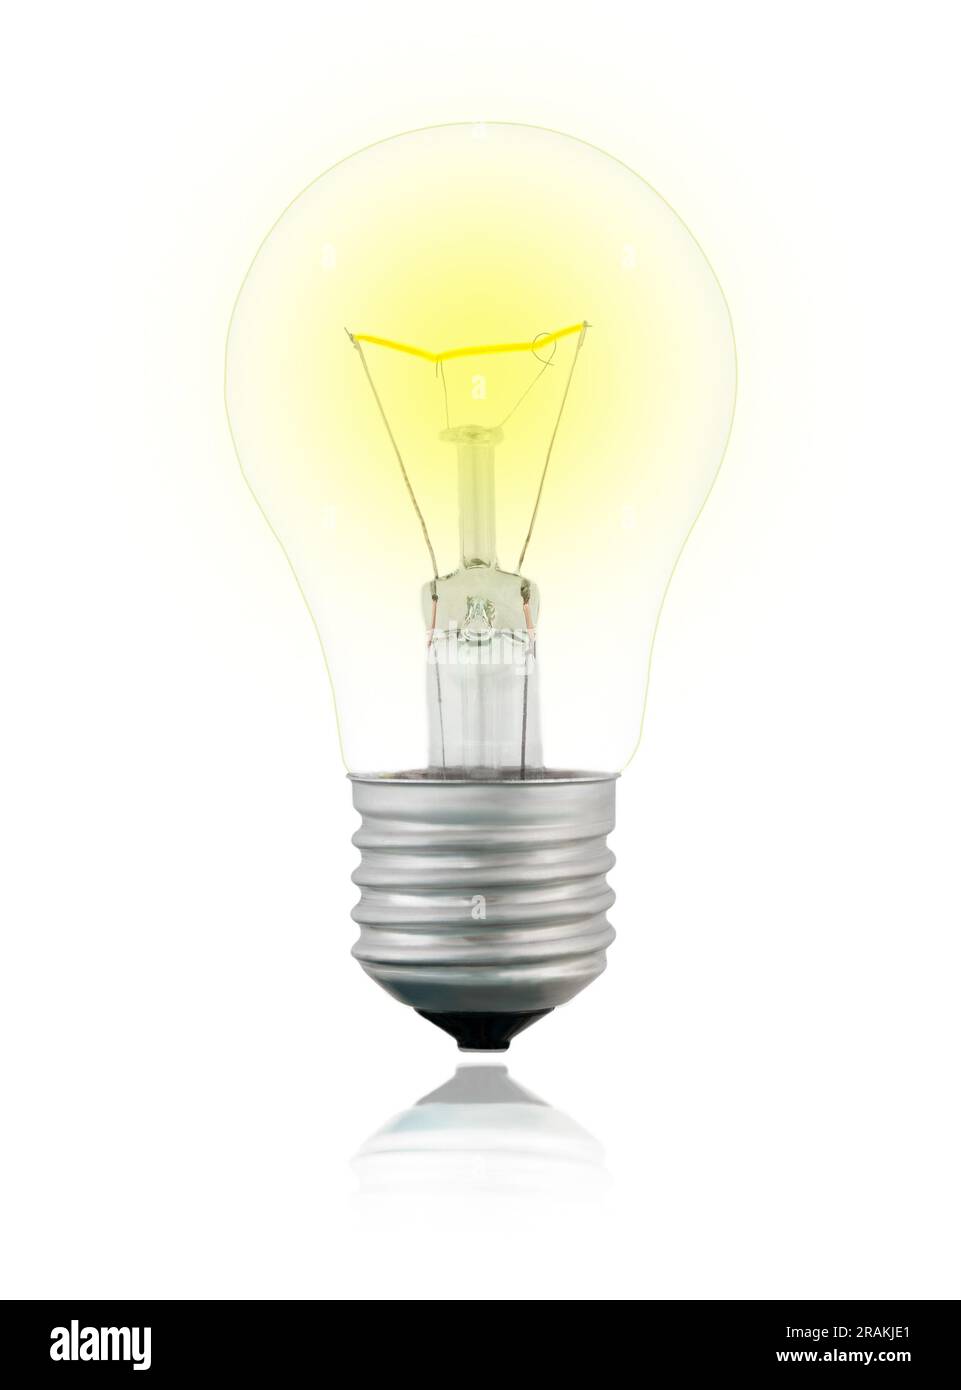 Isolierte, glühende, transparente, gelbe Wolfram-Glühlampe auf weißem Hintergrund mit Reflexion Stockfoto